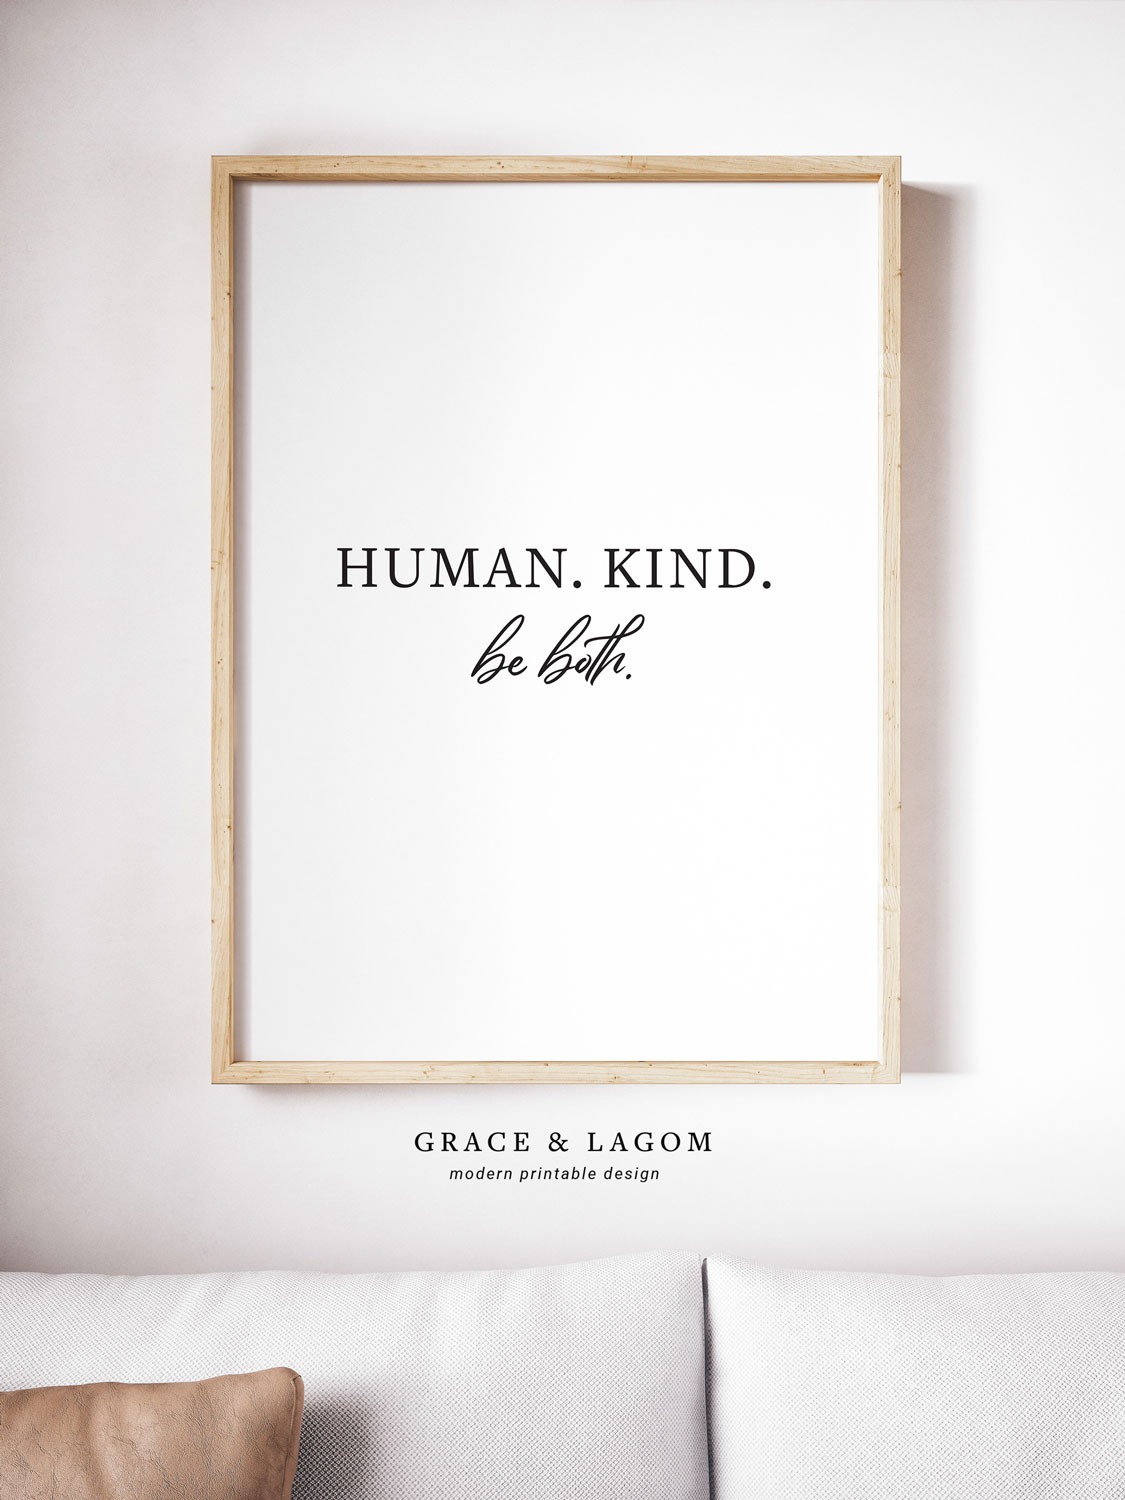 Human, Kind. Be Both.